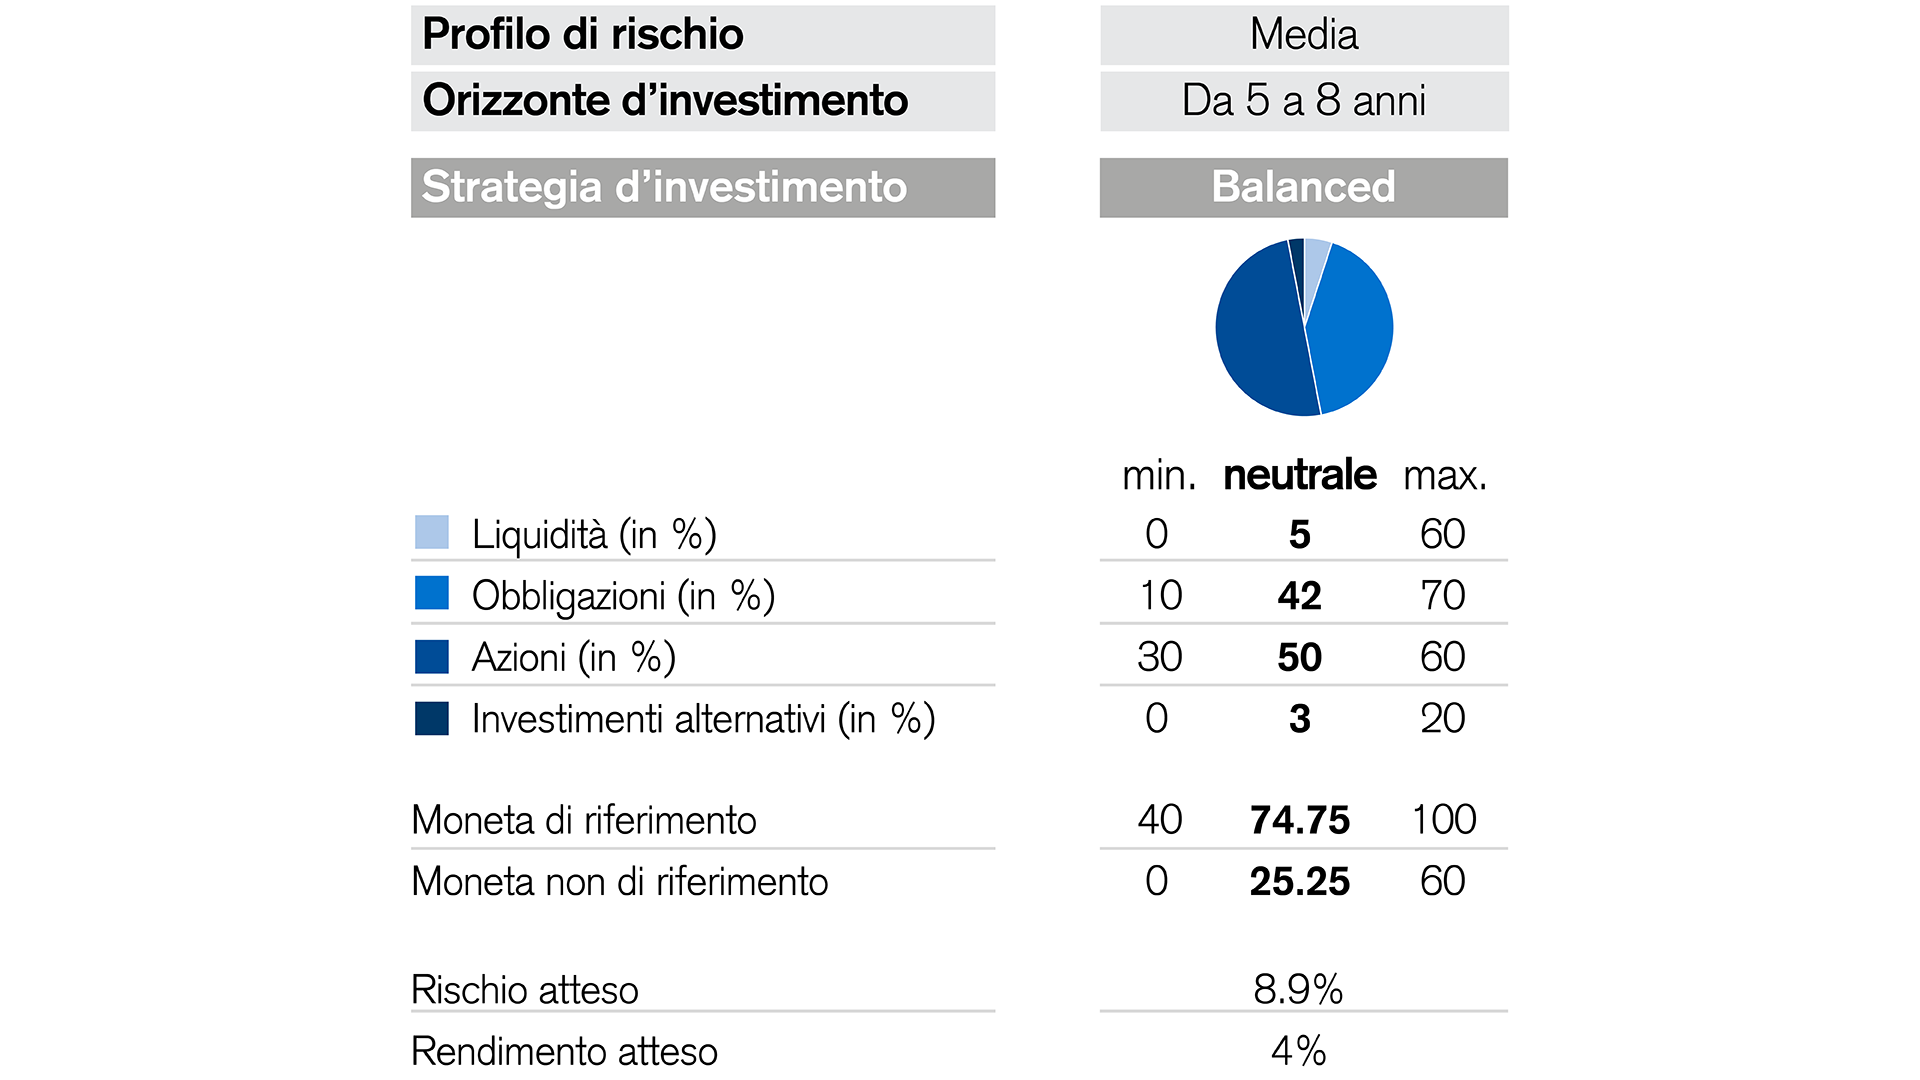 Panoramica del credit suisse interest dividend focus fund